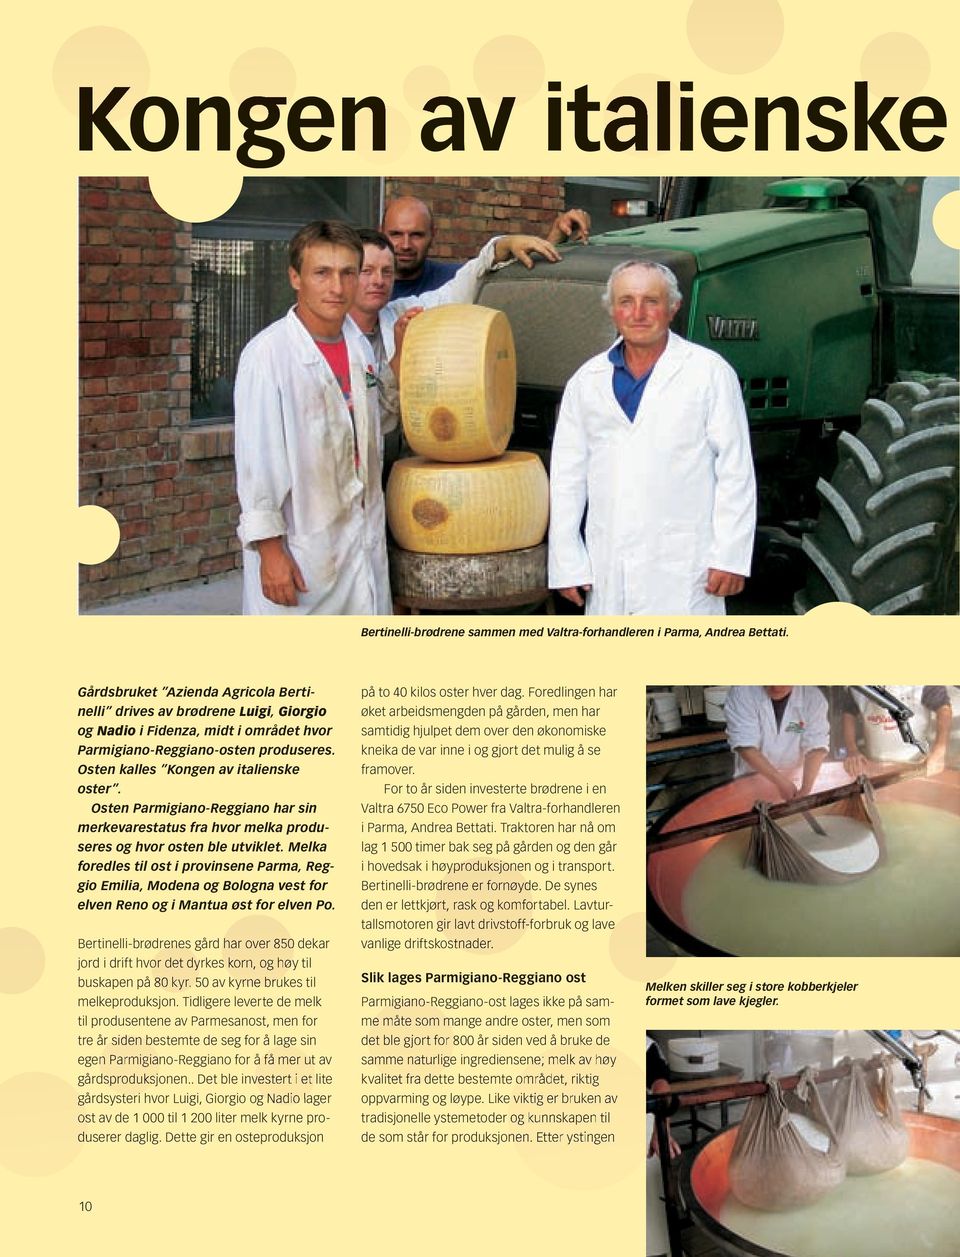 Osten Parmigiano-Reggiano har sin merkevarestatus fra hvor melka produseres og hvor osten ble utviklet.